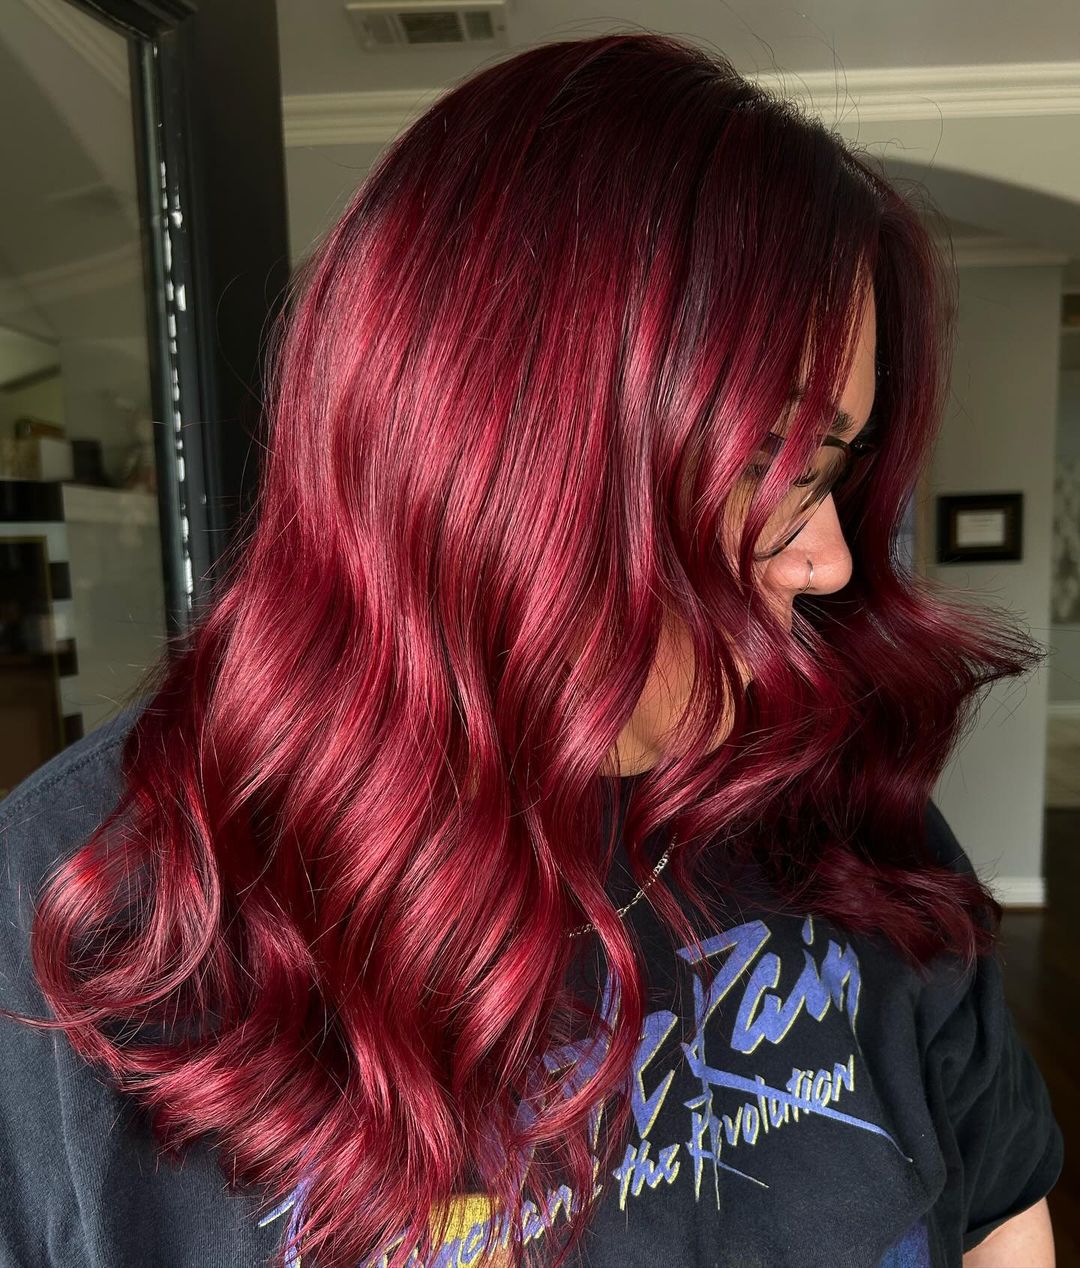 capelli ricci rosso rubino